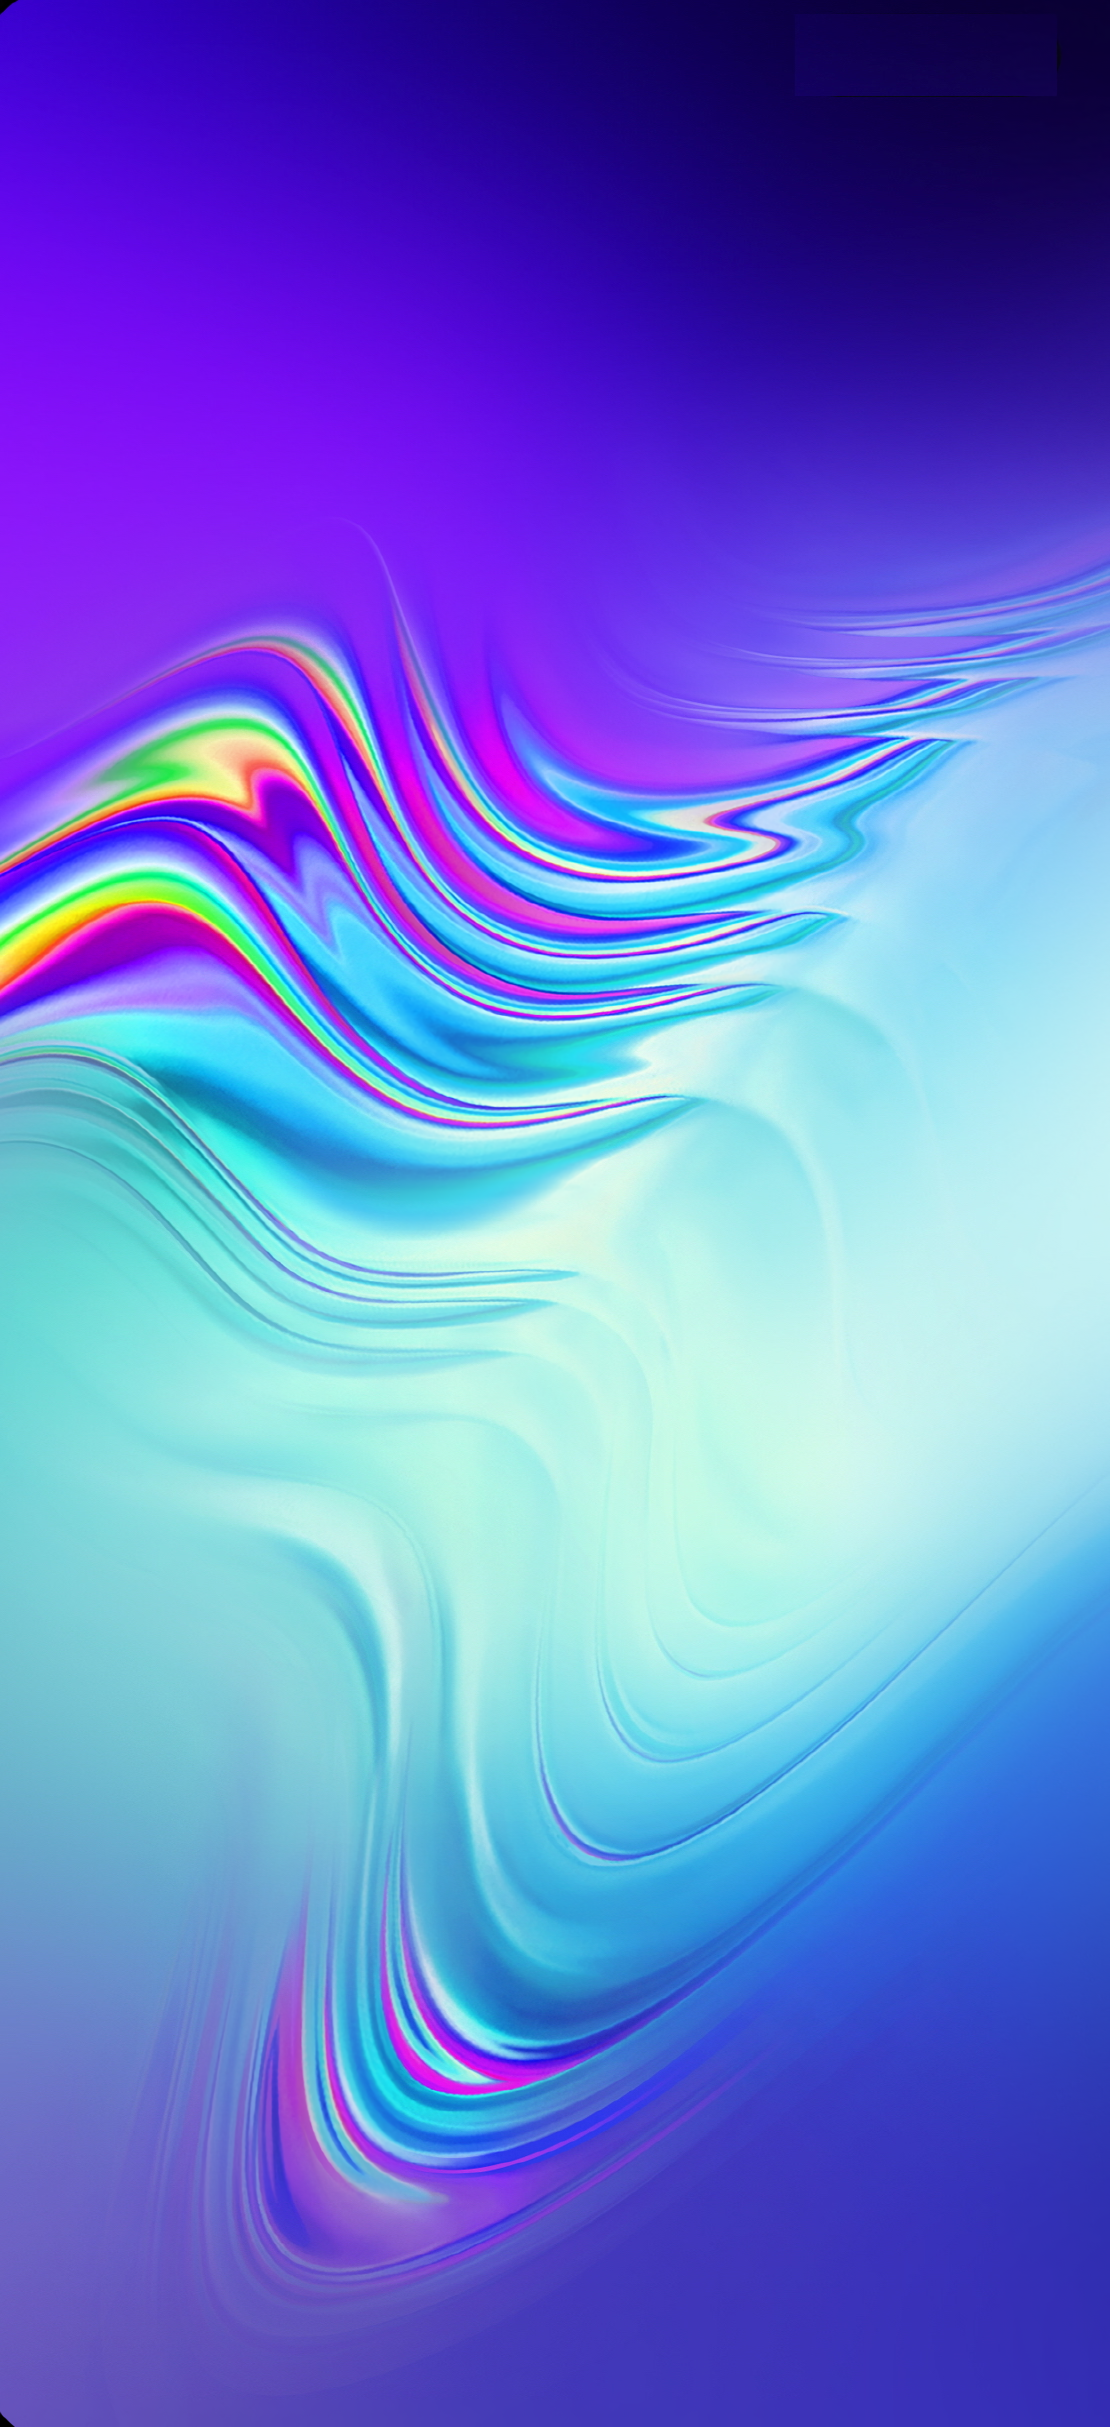 サムスン壁紙イメージ,青い,水,紫の,波,アクア